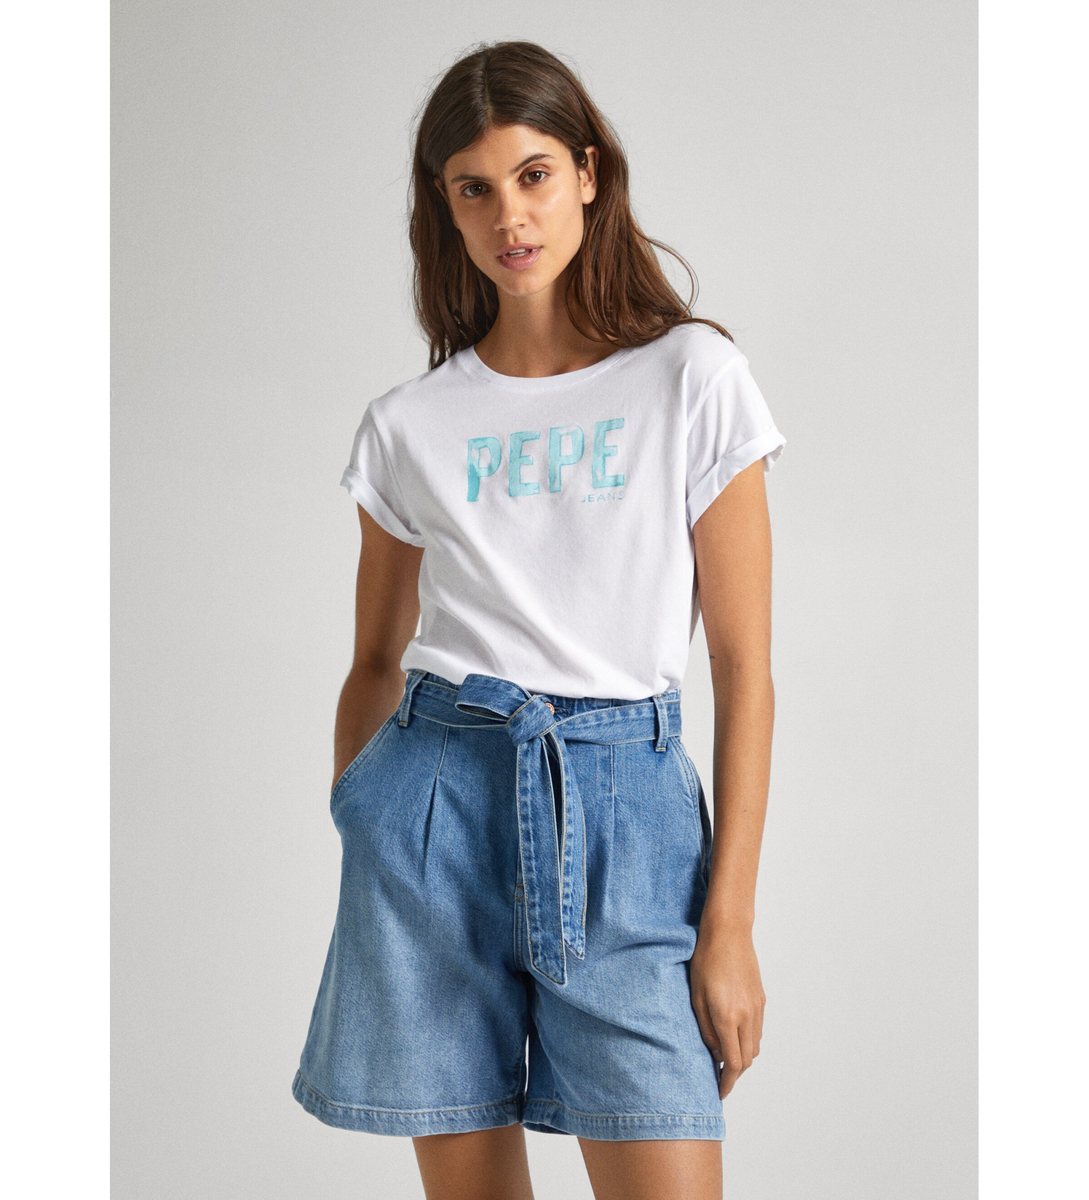 Pepe Jeans dámské bílé tričko JANET s potiskem - M (800)